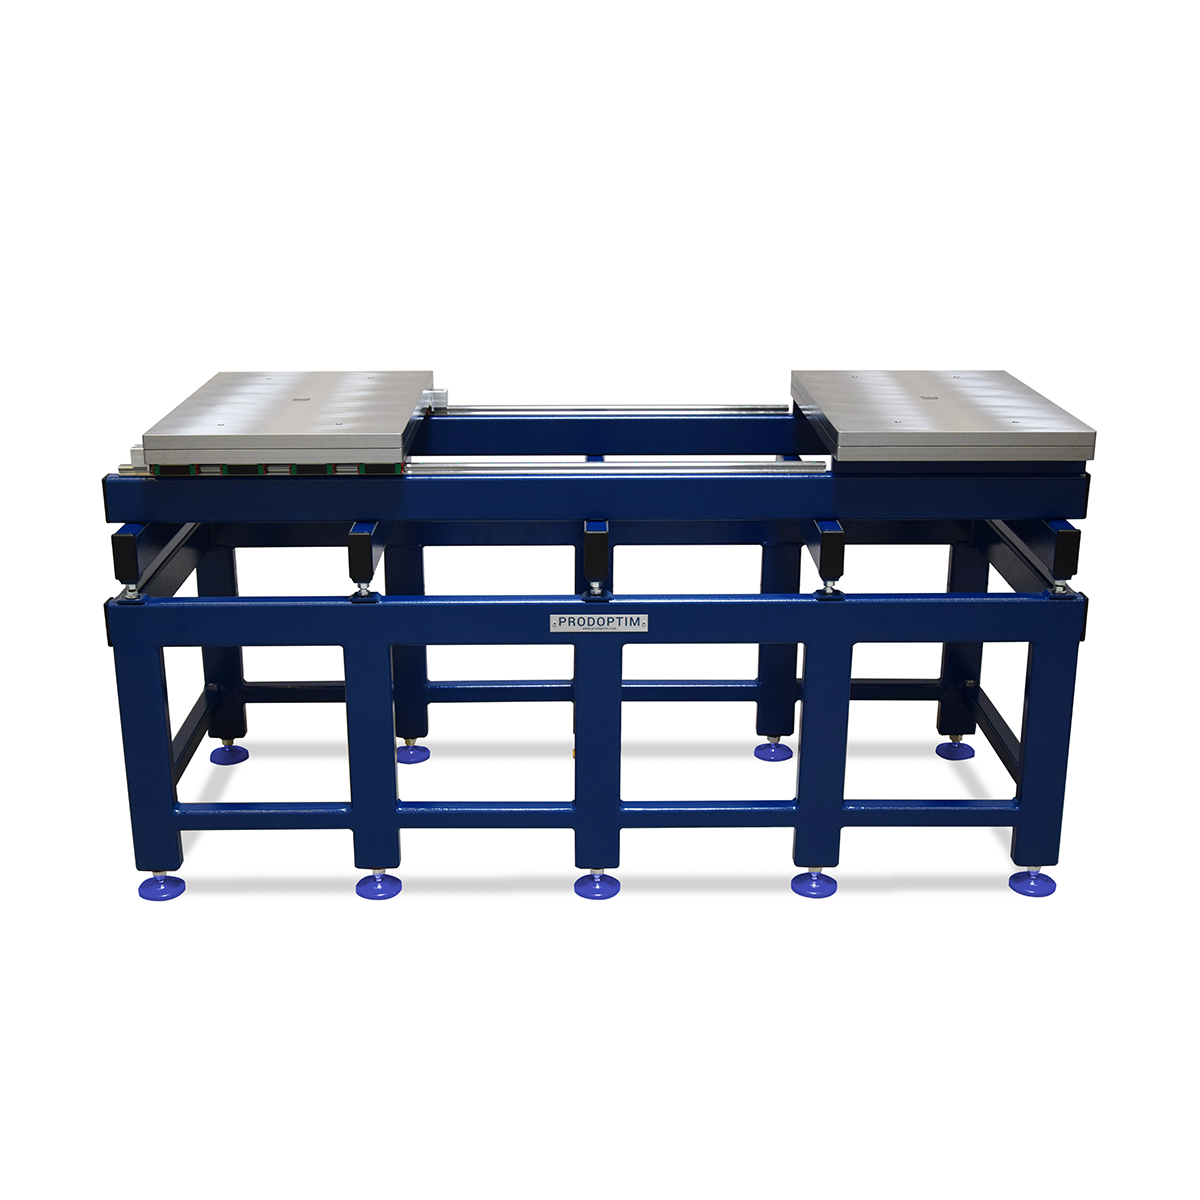 Table de Moule standard 6 Tonnes adaptée à tous les types de moules pour une efficacité et une sécurité optimale- OPTIM_ST6_0